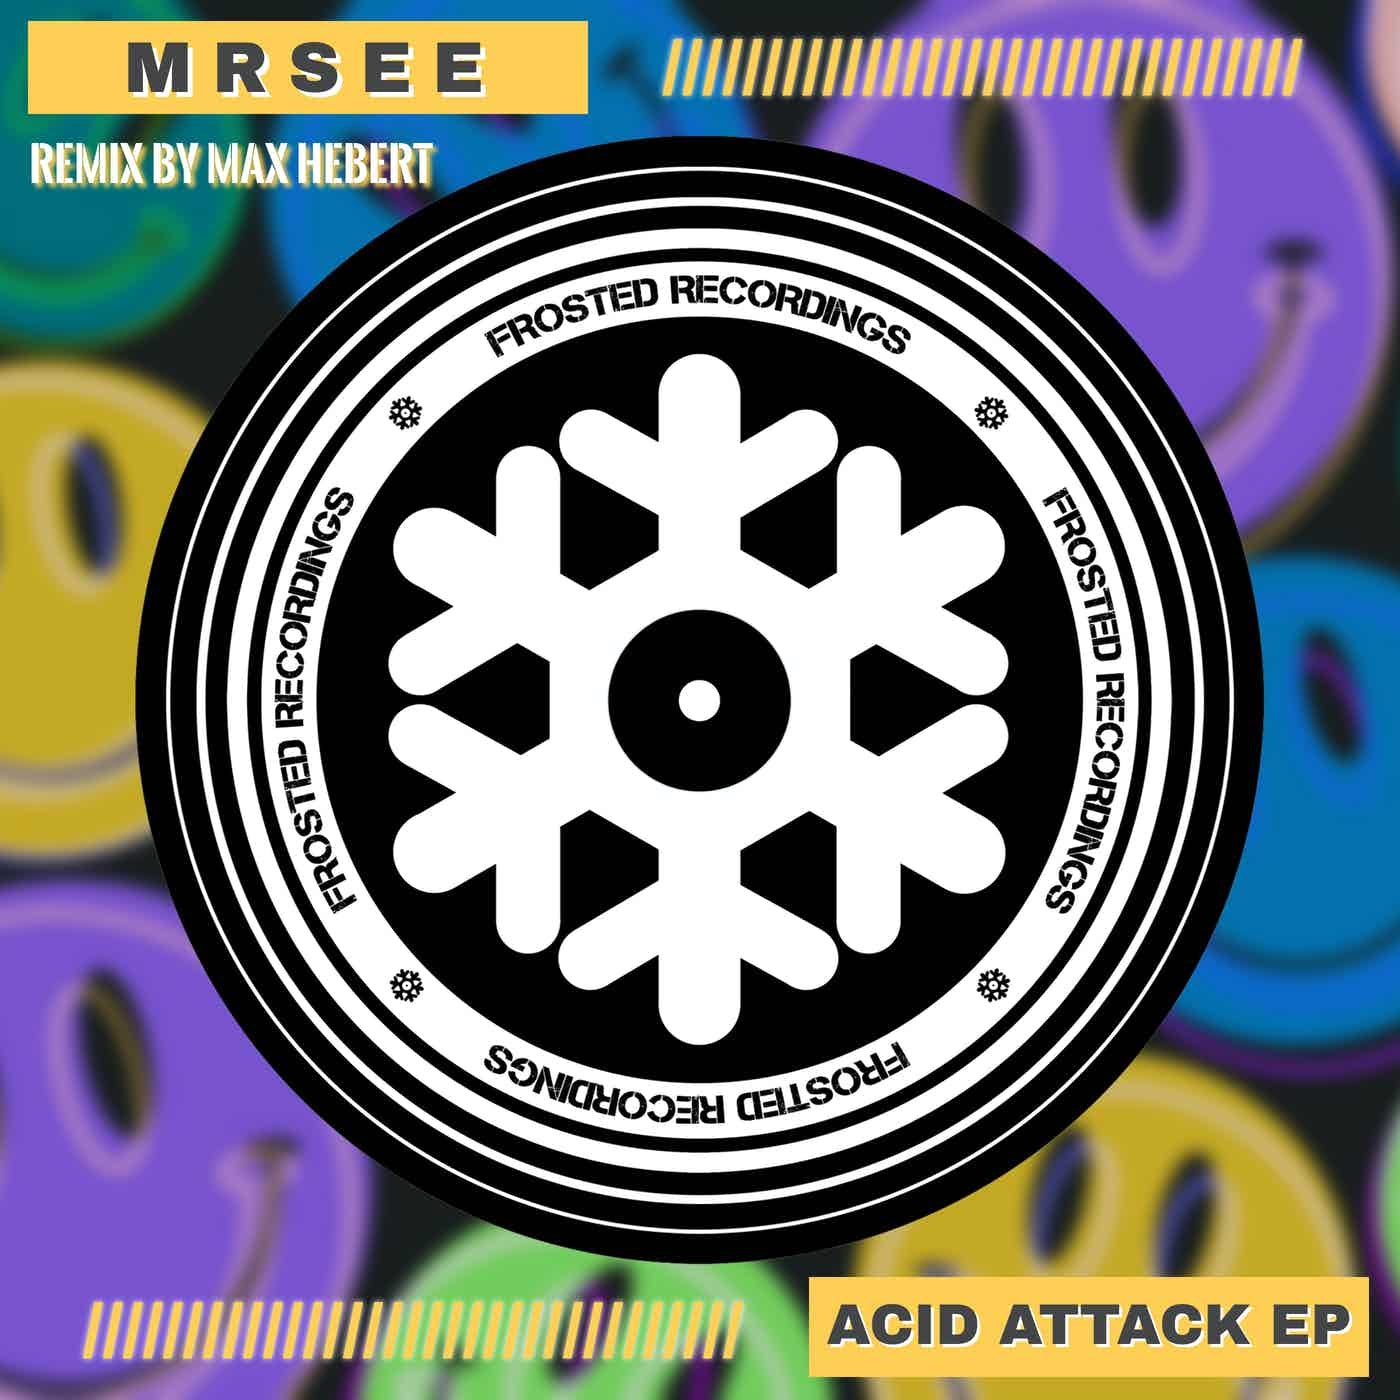 Acid Attack EP